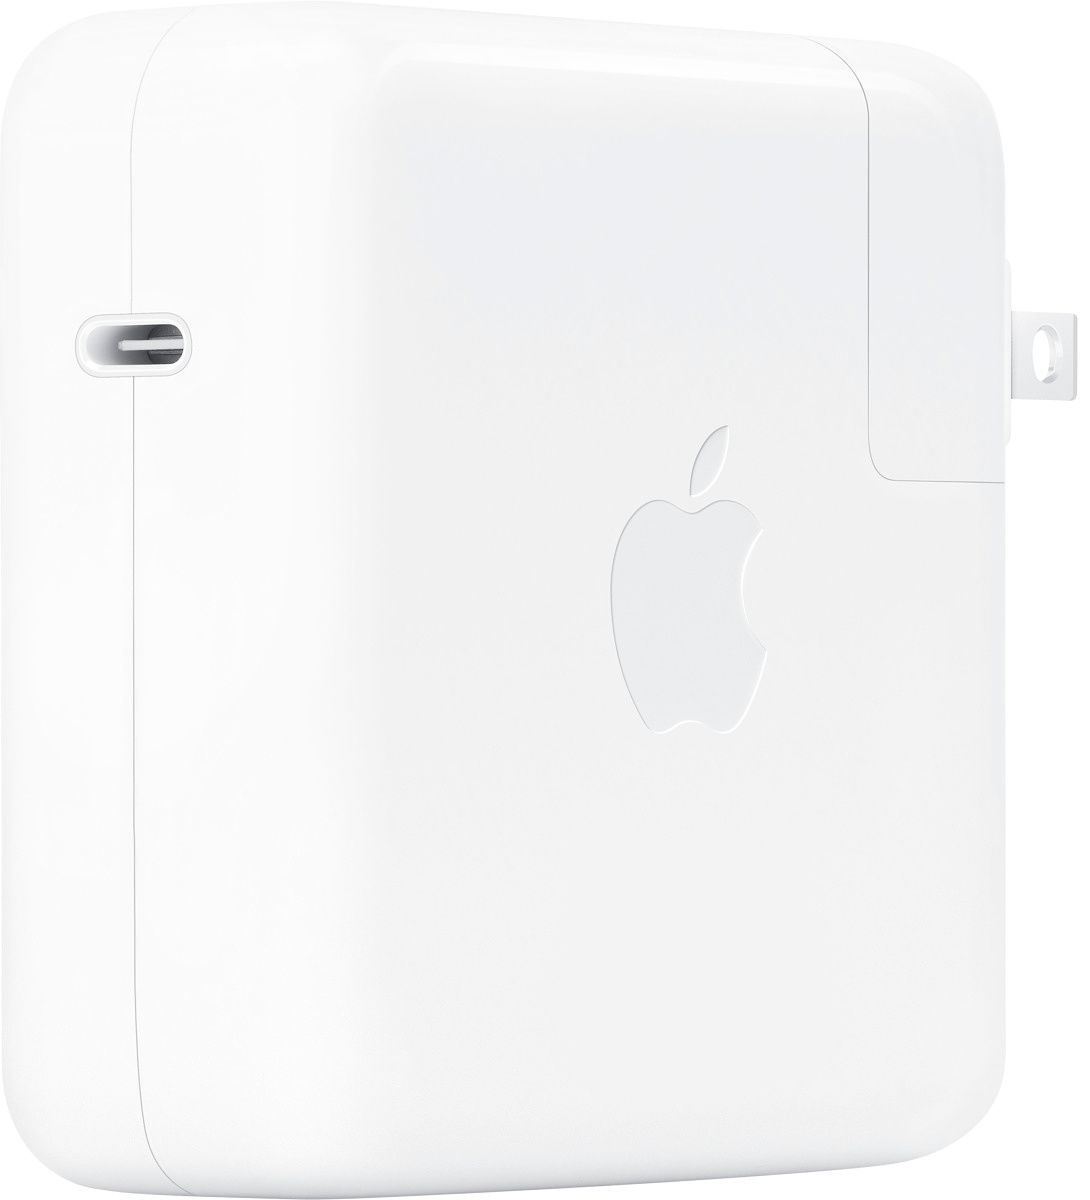 Möchten Sie Ihren Laptop schneller aufladen?  Das 67-W-Ladegerät von Apple kann Ihr MacBook Air viel schneller aufladen als das standardmäßige 30-W-Netzteil.  Sie müssen jedoch Ihr eigenes Kabel verwenden.